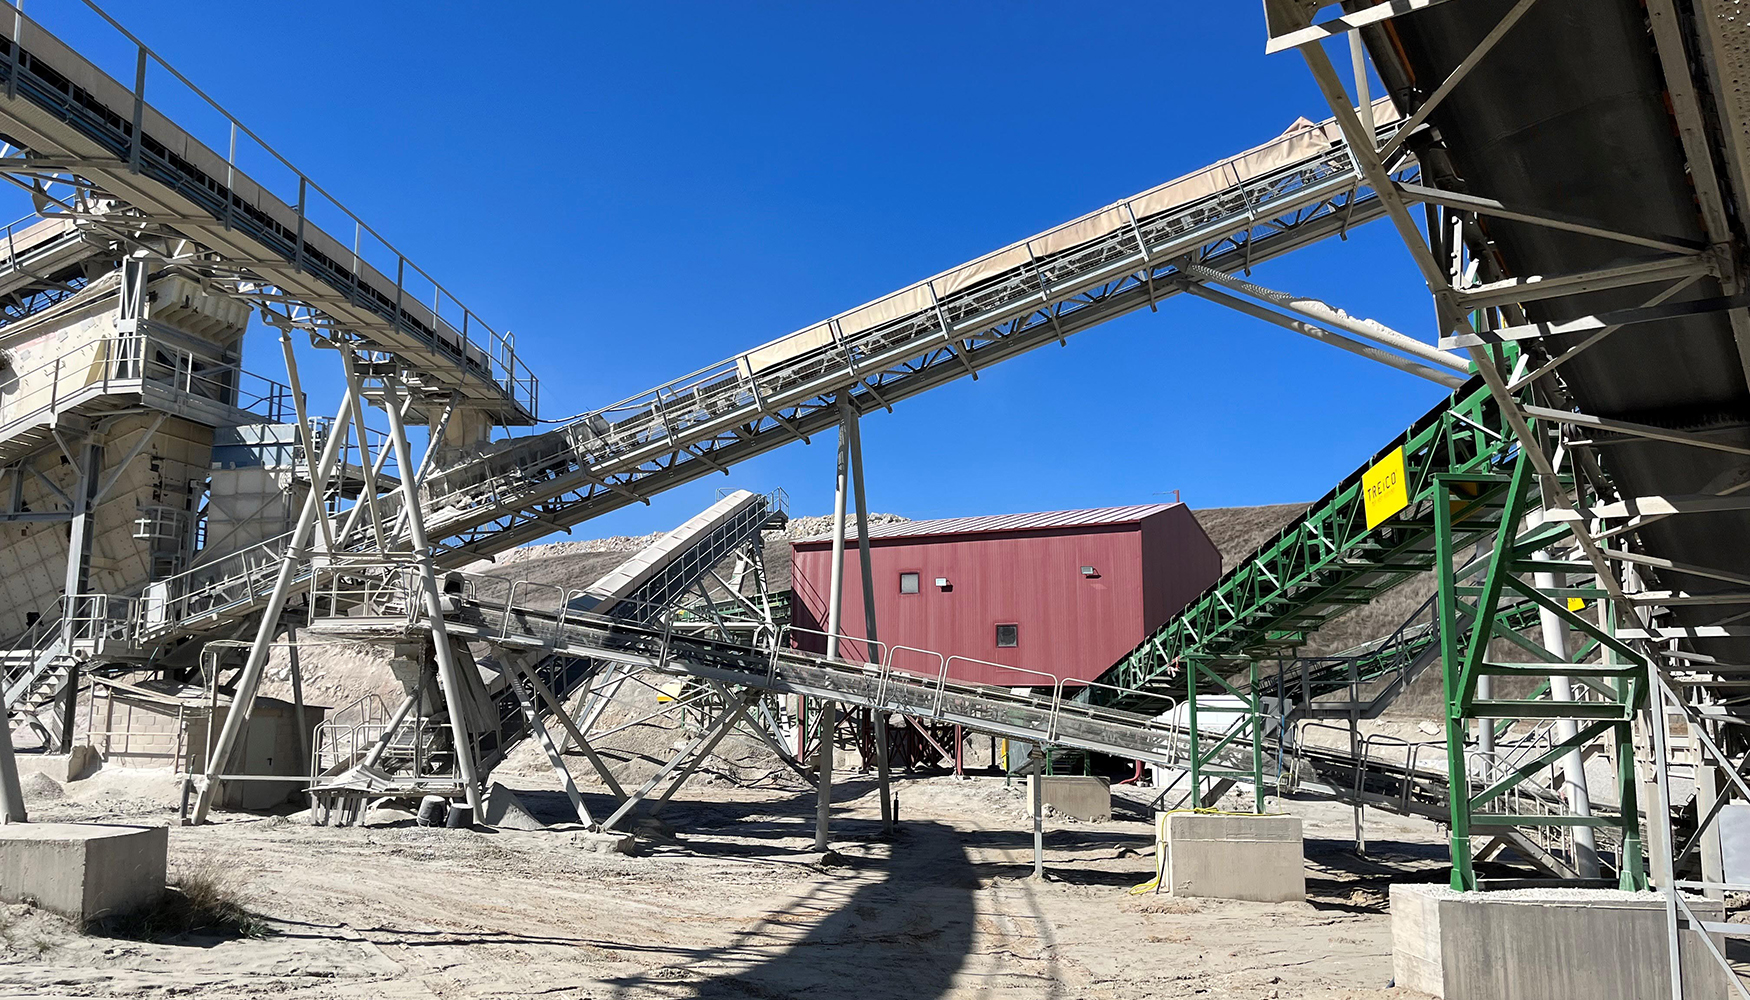 La mina de Saloro, en Barruecopardo, es una de las ms importantes de Europa